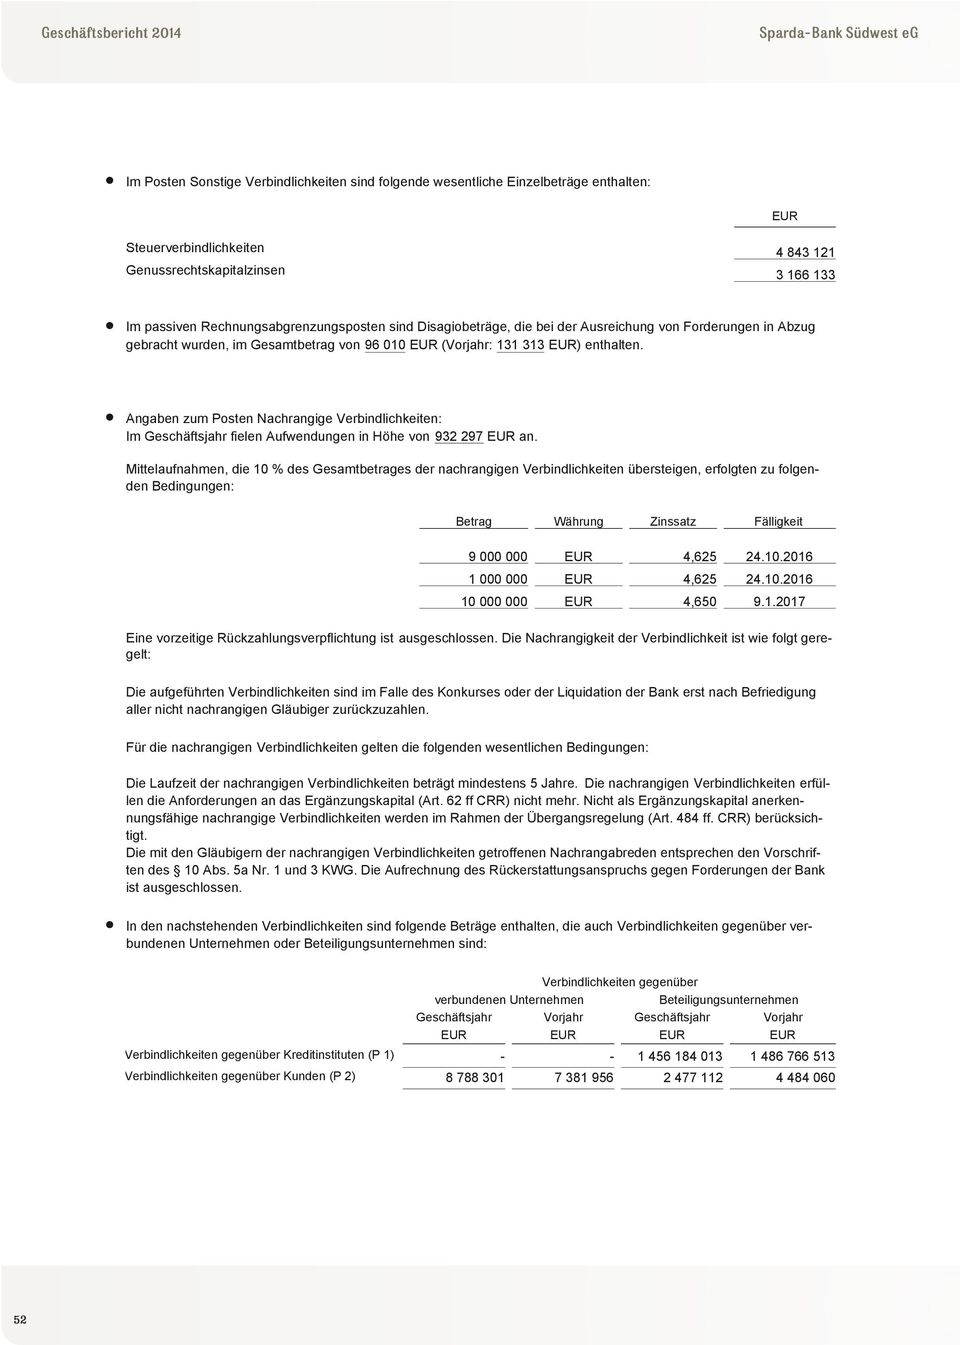 Angaben zum Posten Nachrangige Verbindlichkeiten: Im Geschäftsjahr fielen Aufwendungen in Höhe von 932 297 EUR an.